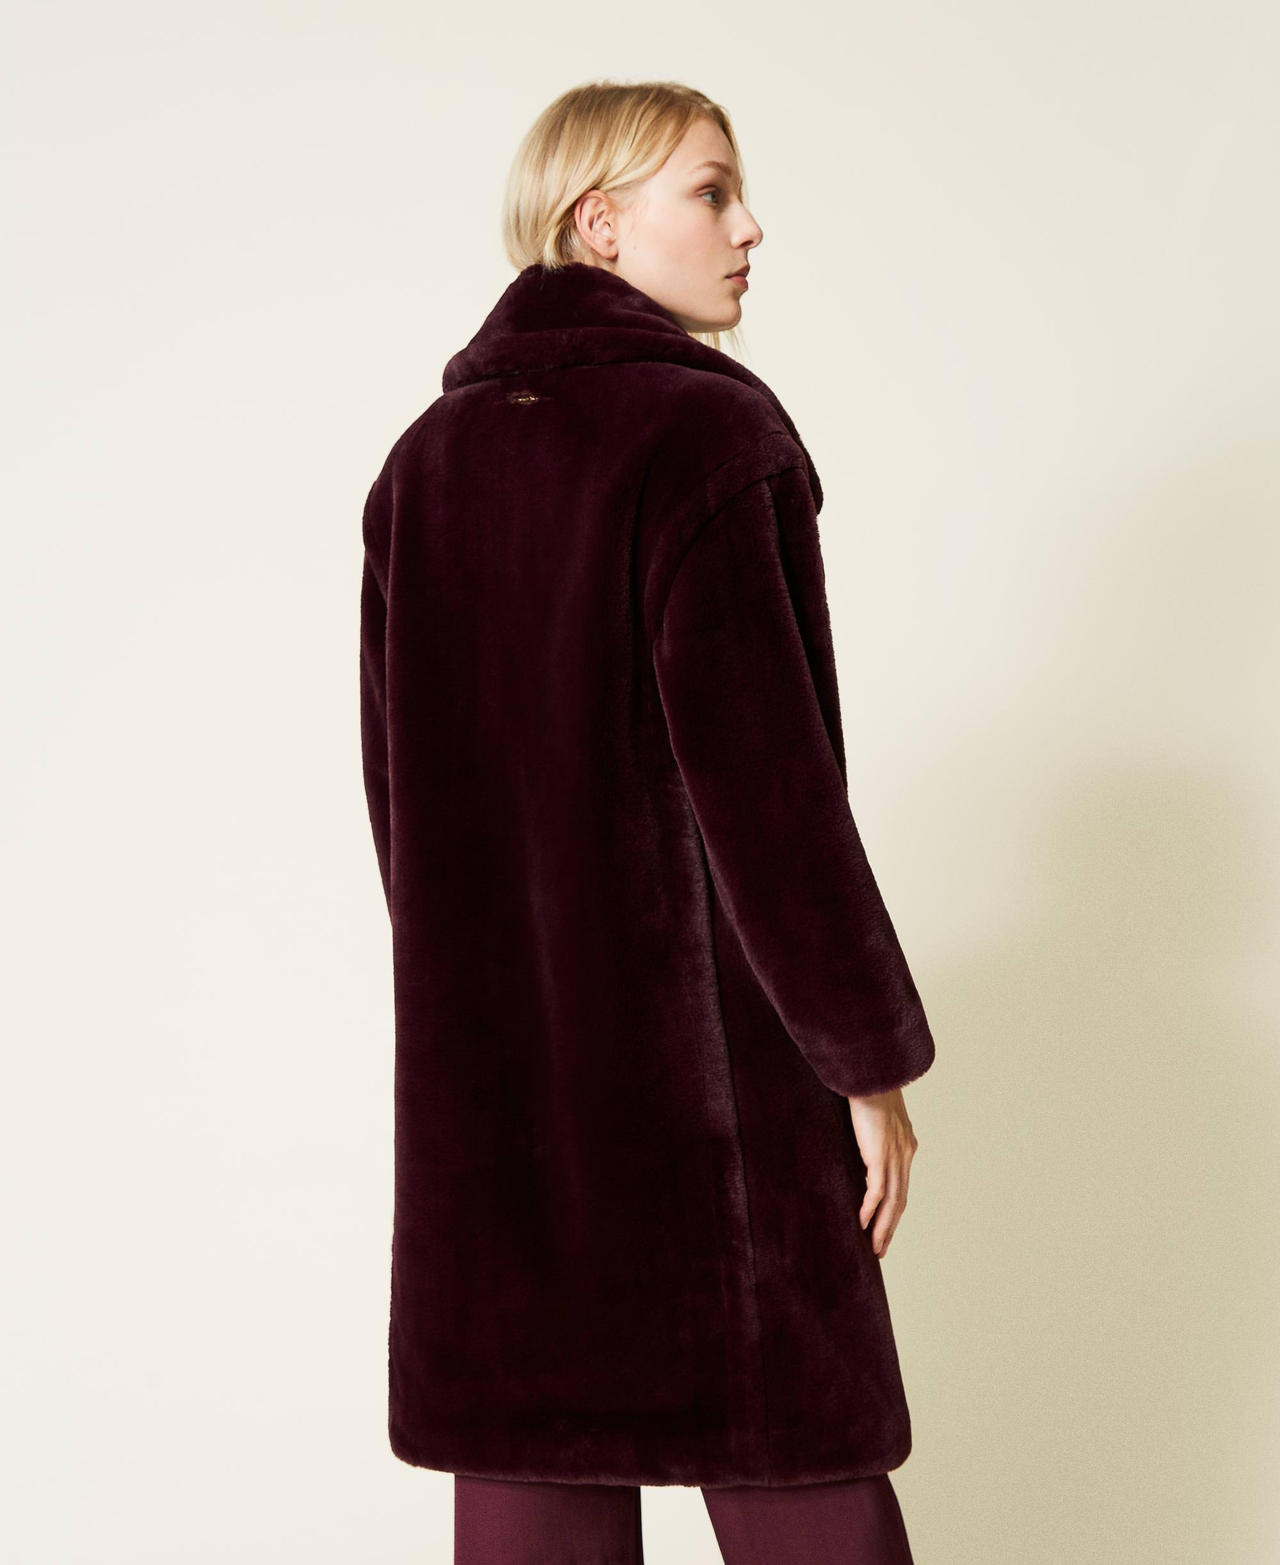 Manteau croisé avec revers Violet « Dark Wine » Femme 212LL2NAA-03